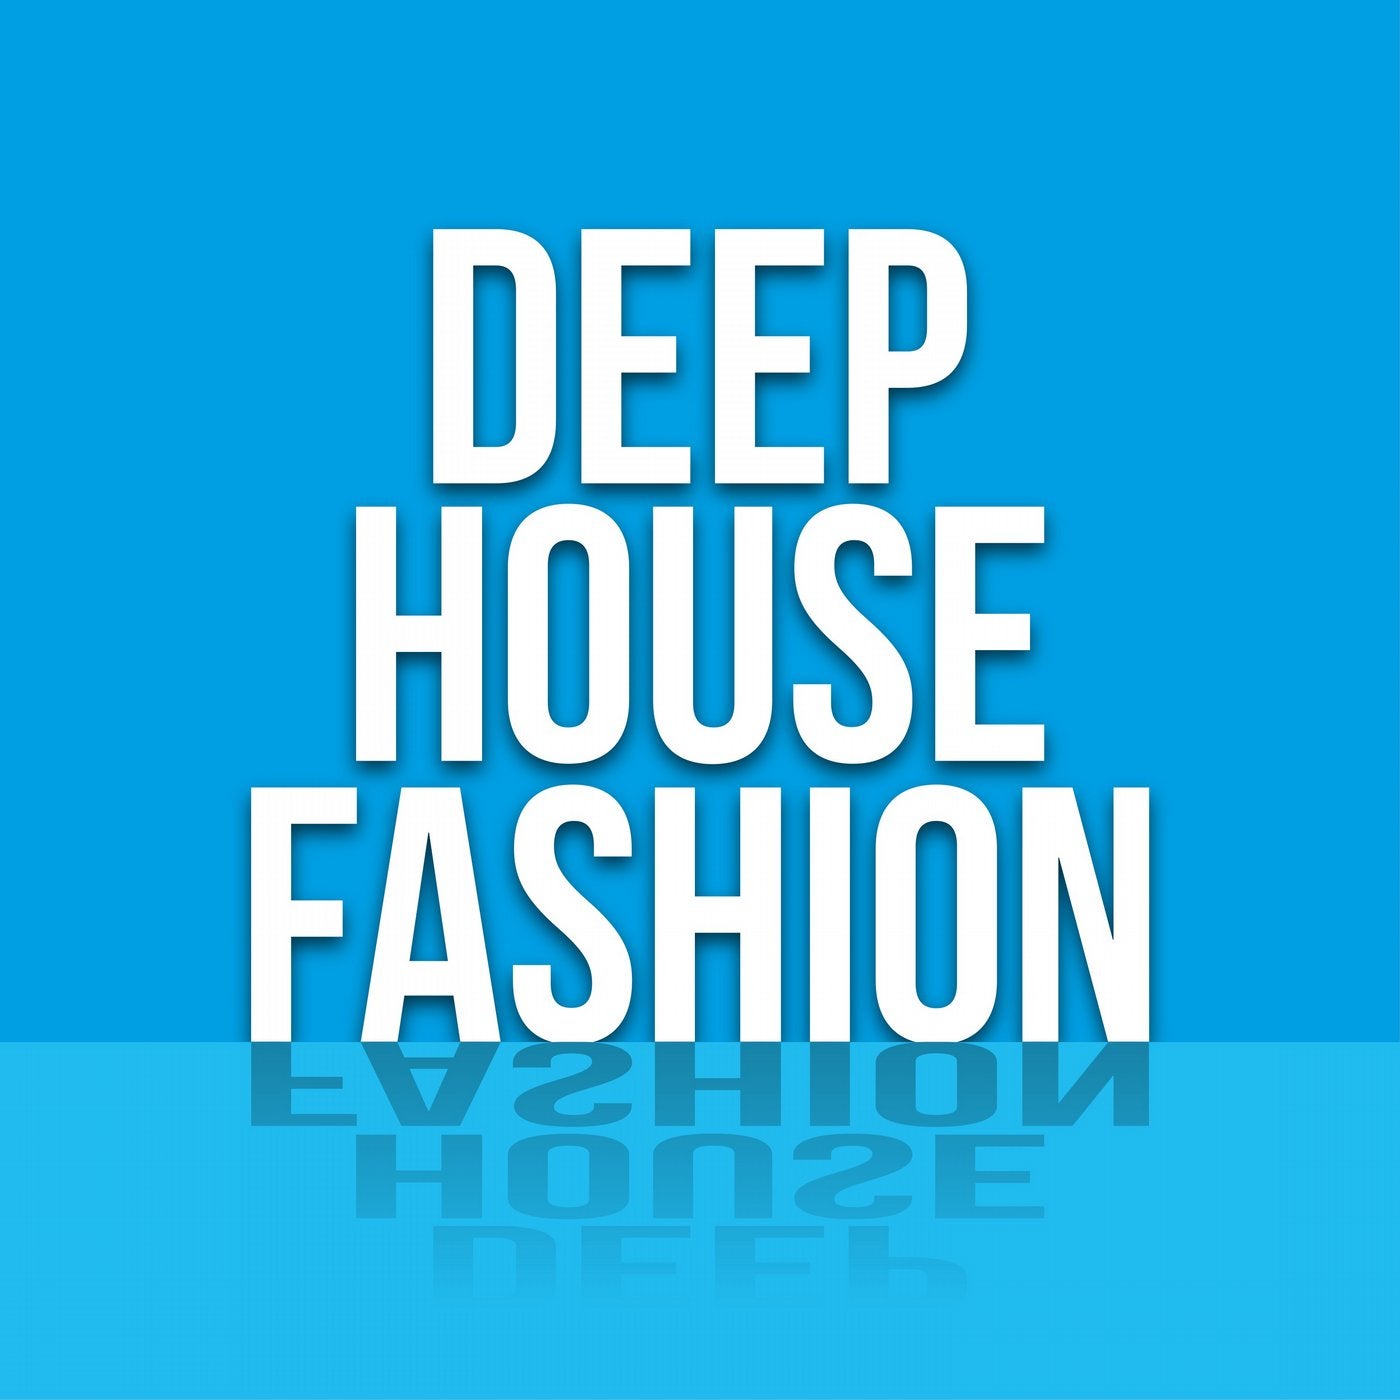 Deep House Fashion